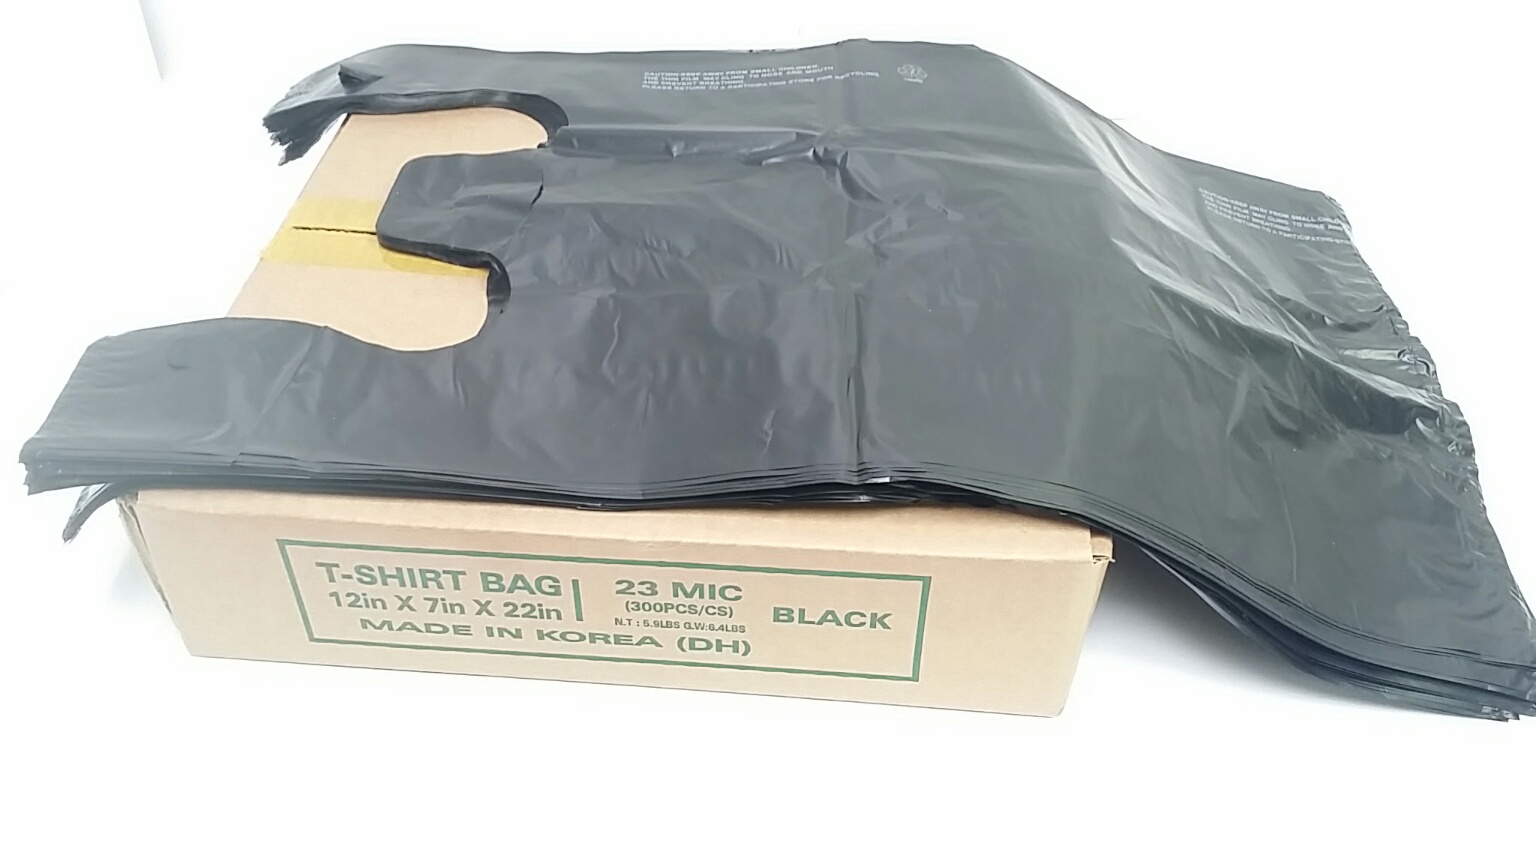 1/6 Black Plastic Bag 23Mic 12 in x 7 in x 22 in 300pcs/cs